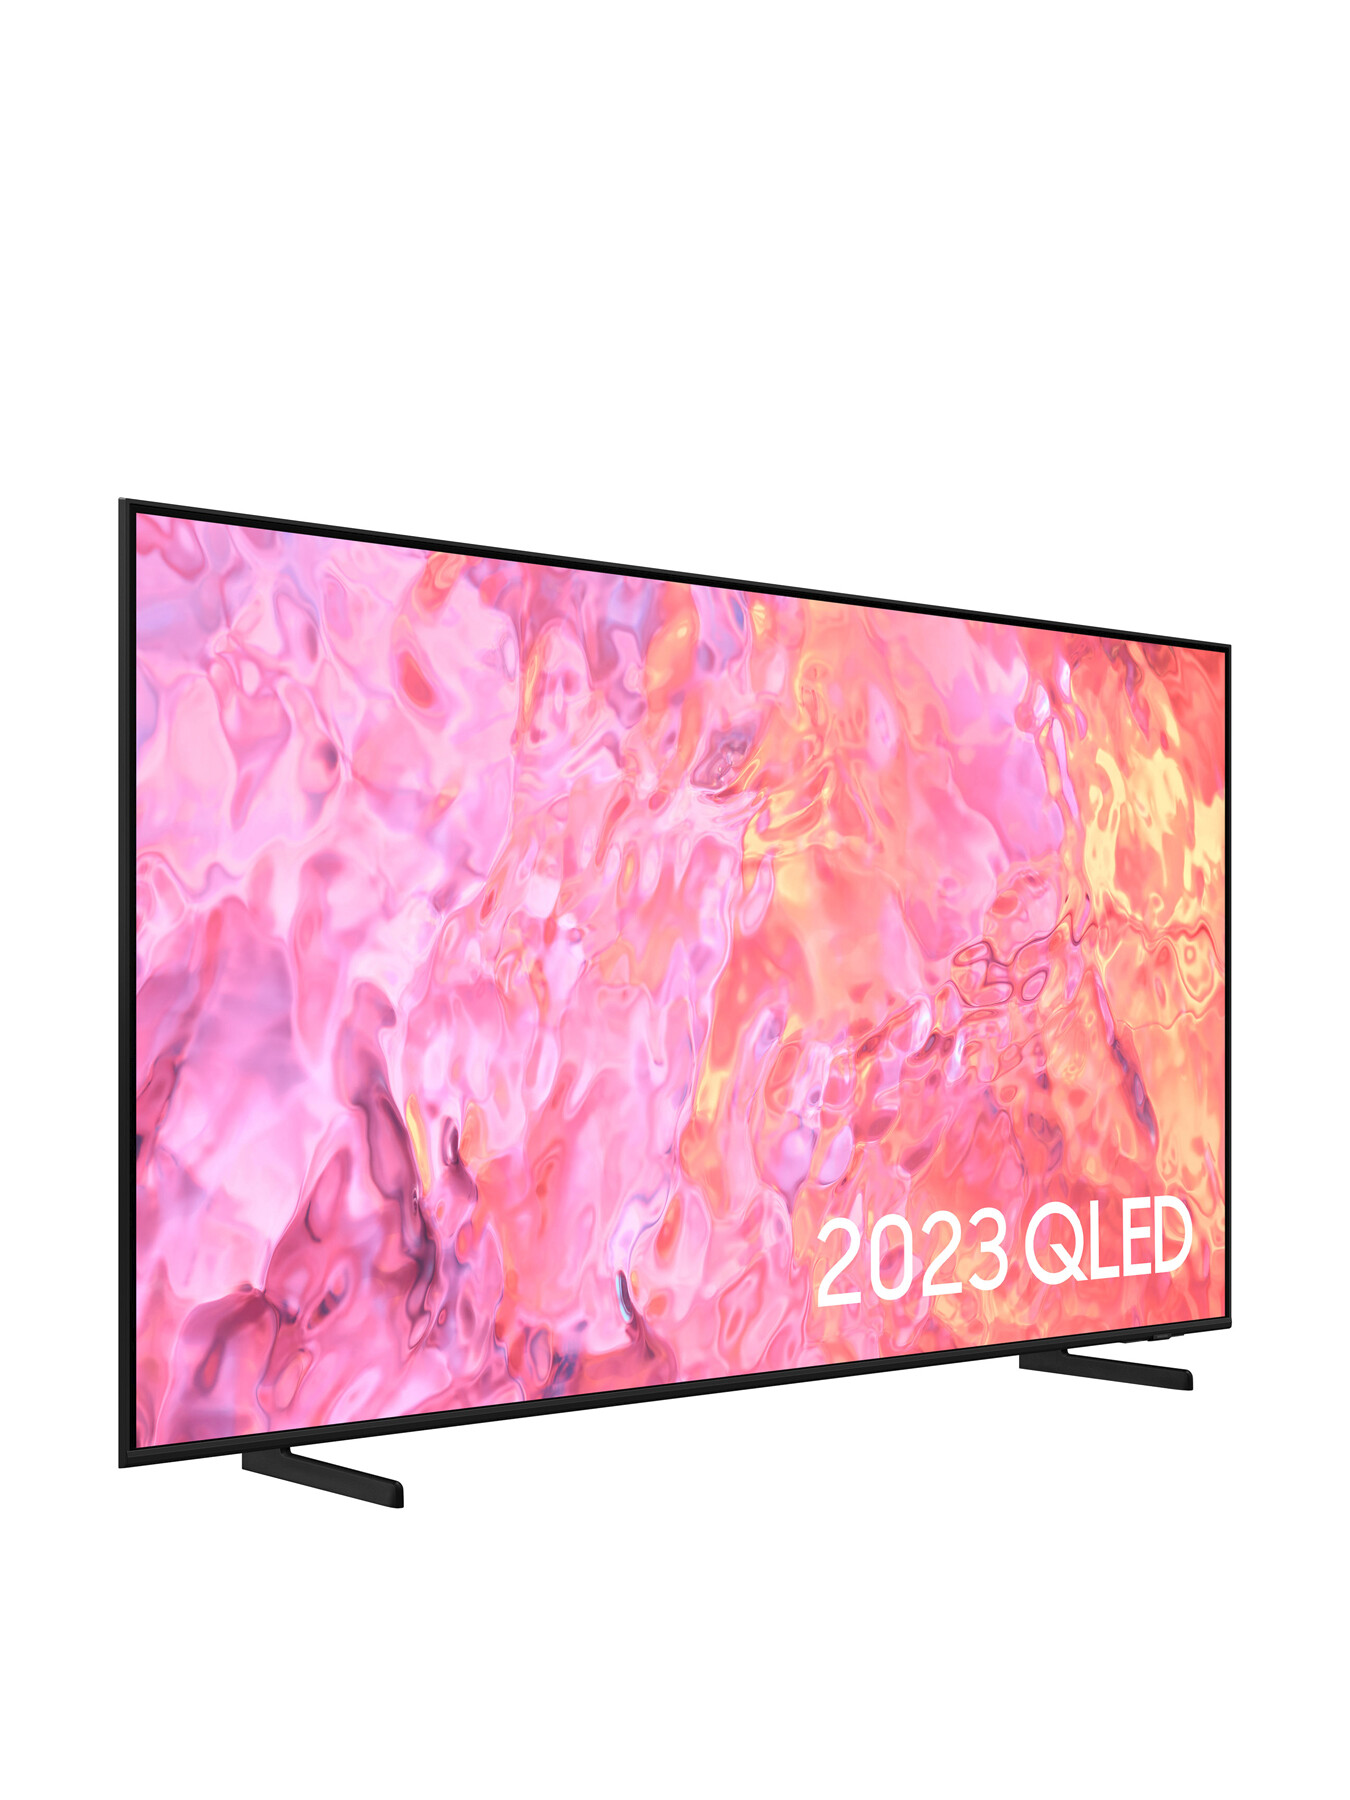 Samsung QE50Q60 QLED HDR 4k Smart TV50 Inch (2023) | Fenwick